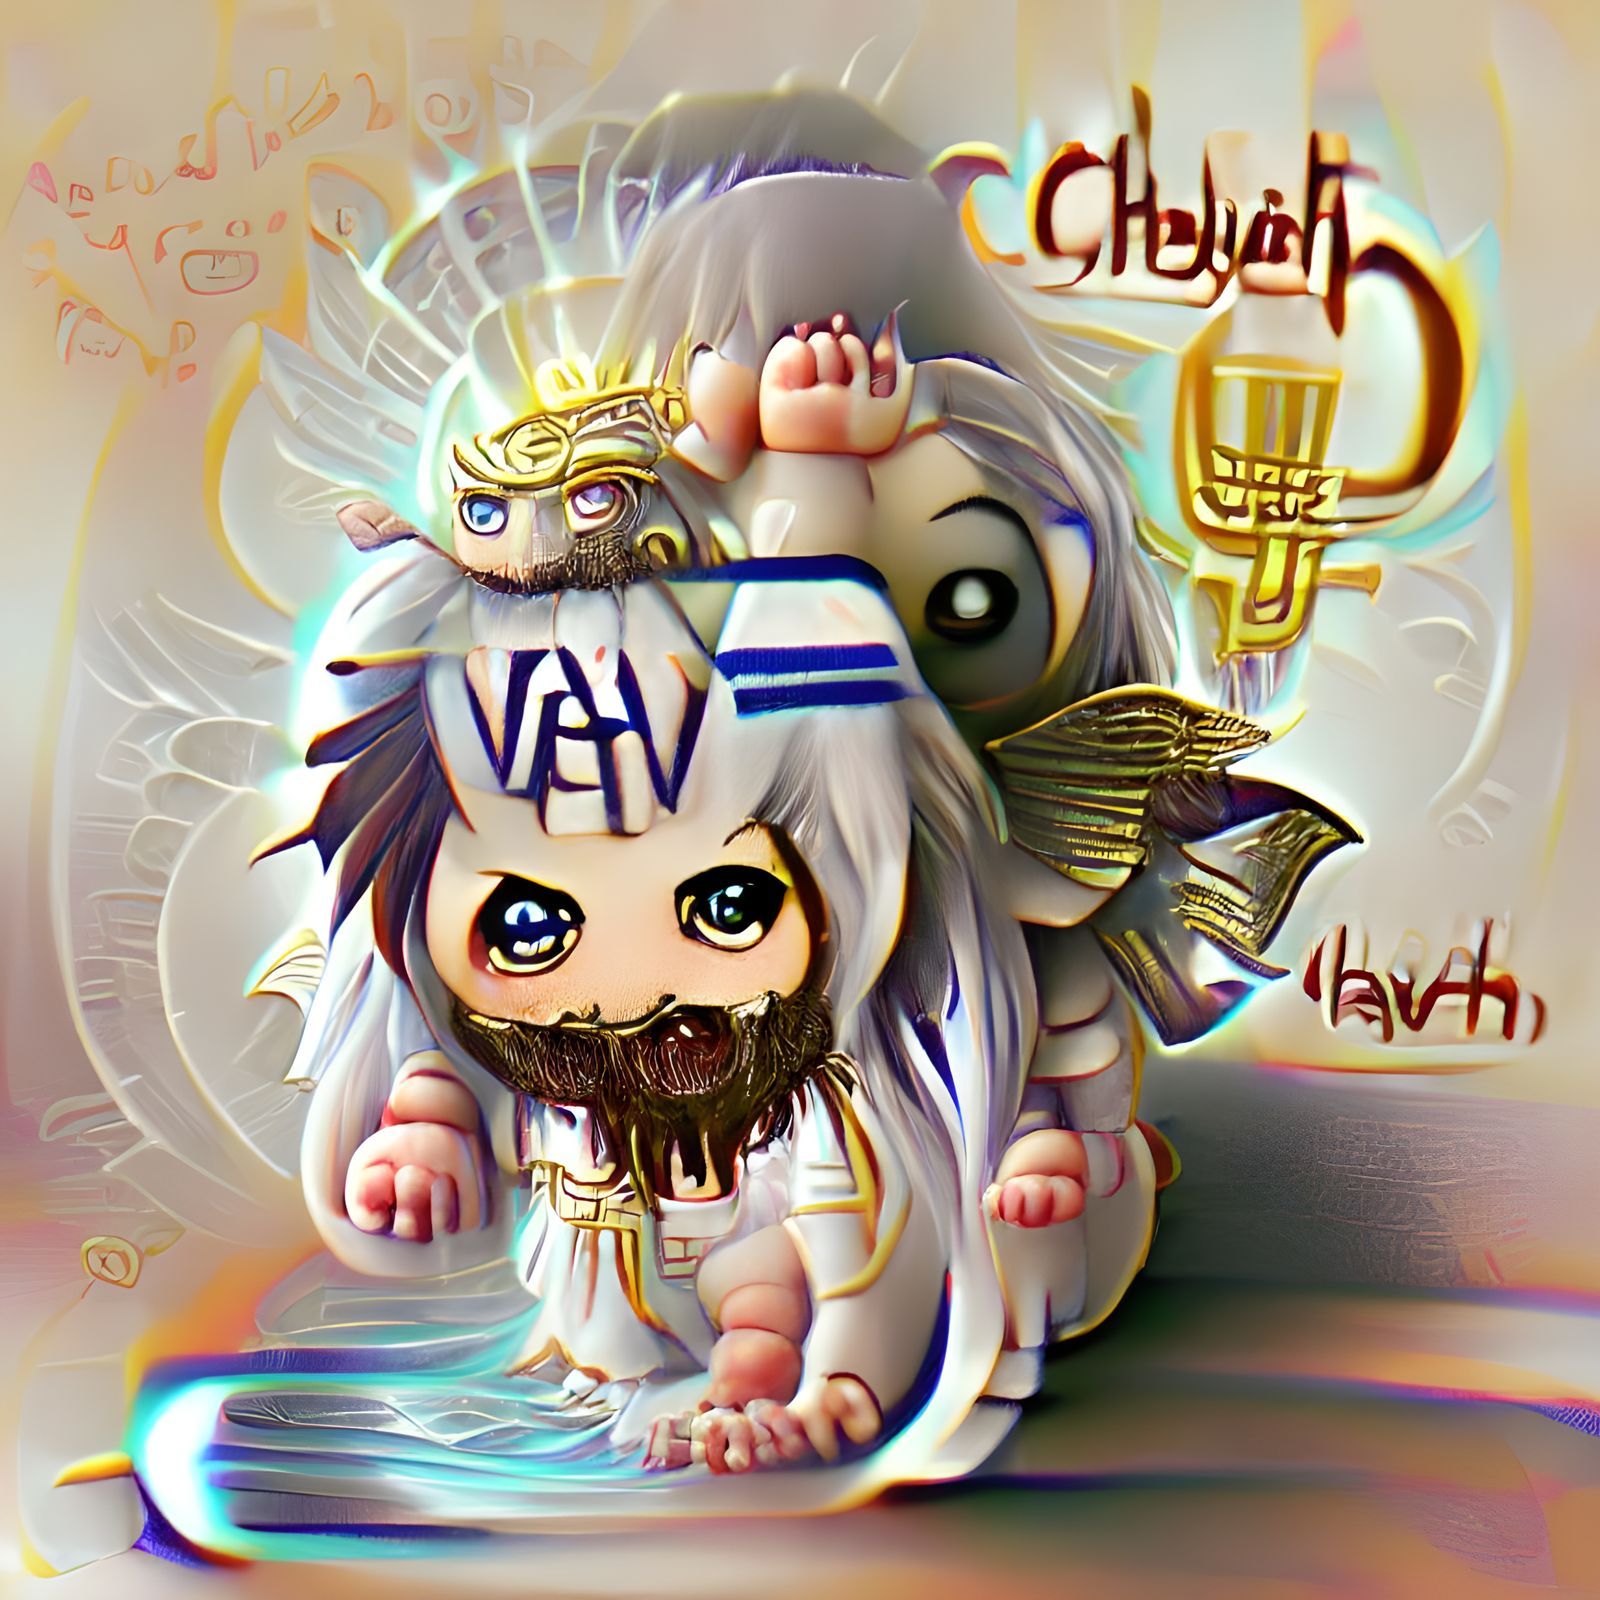 Chibi Yhwh